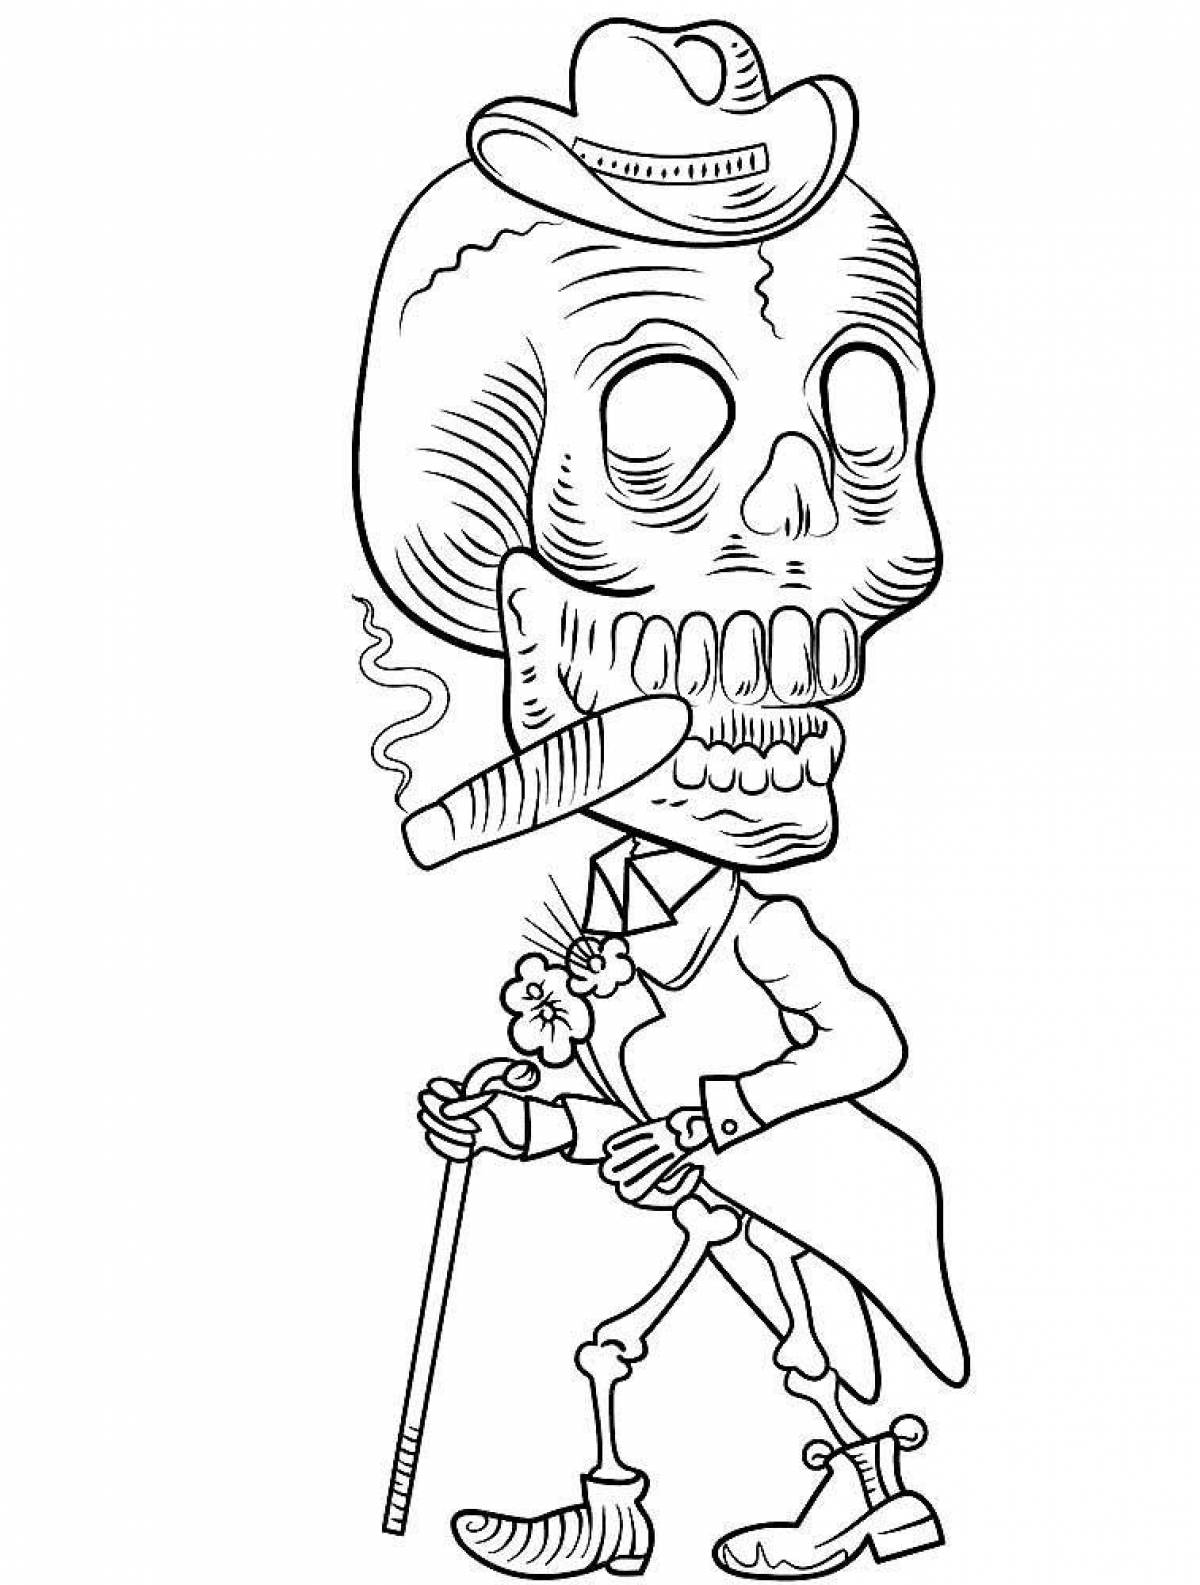 Skeleton #1